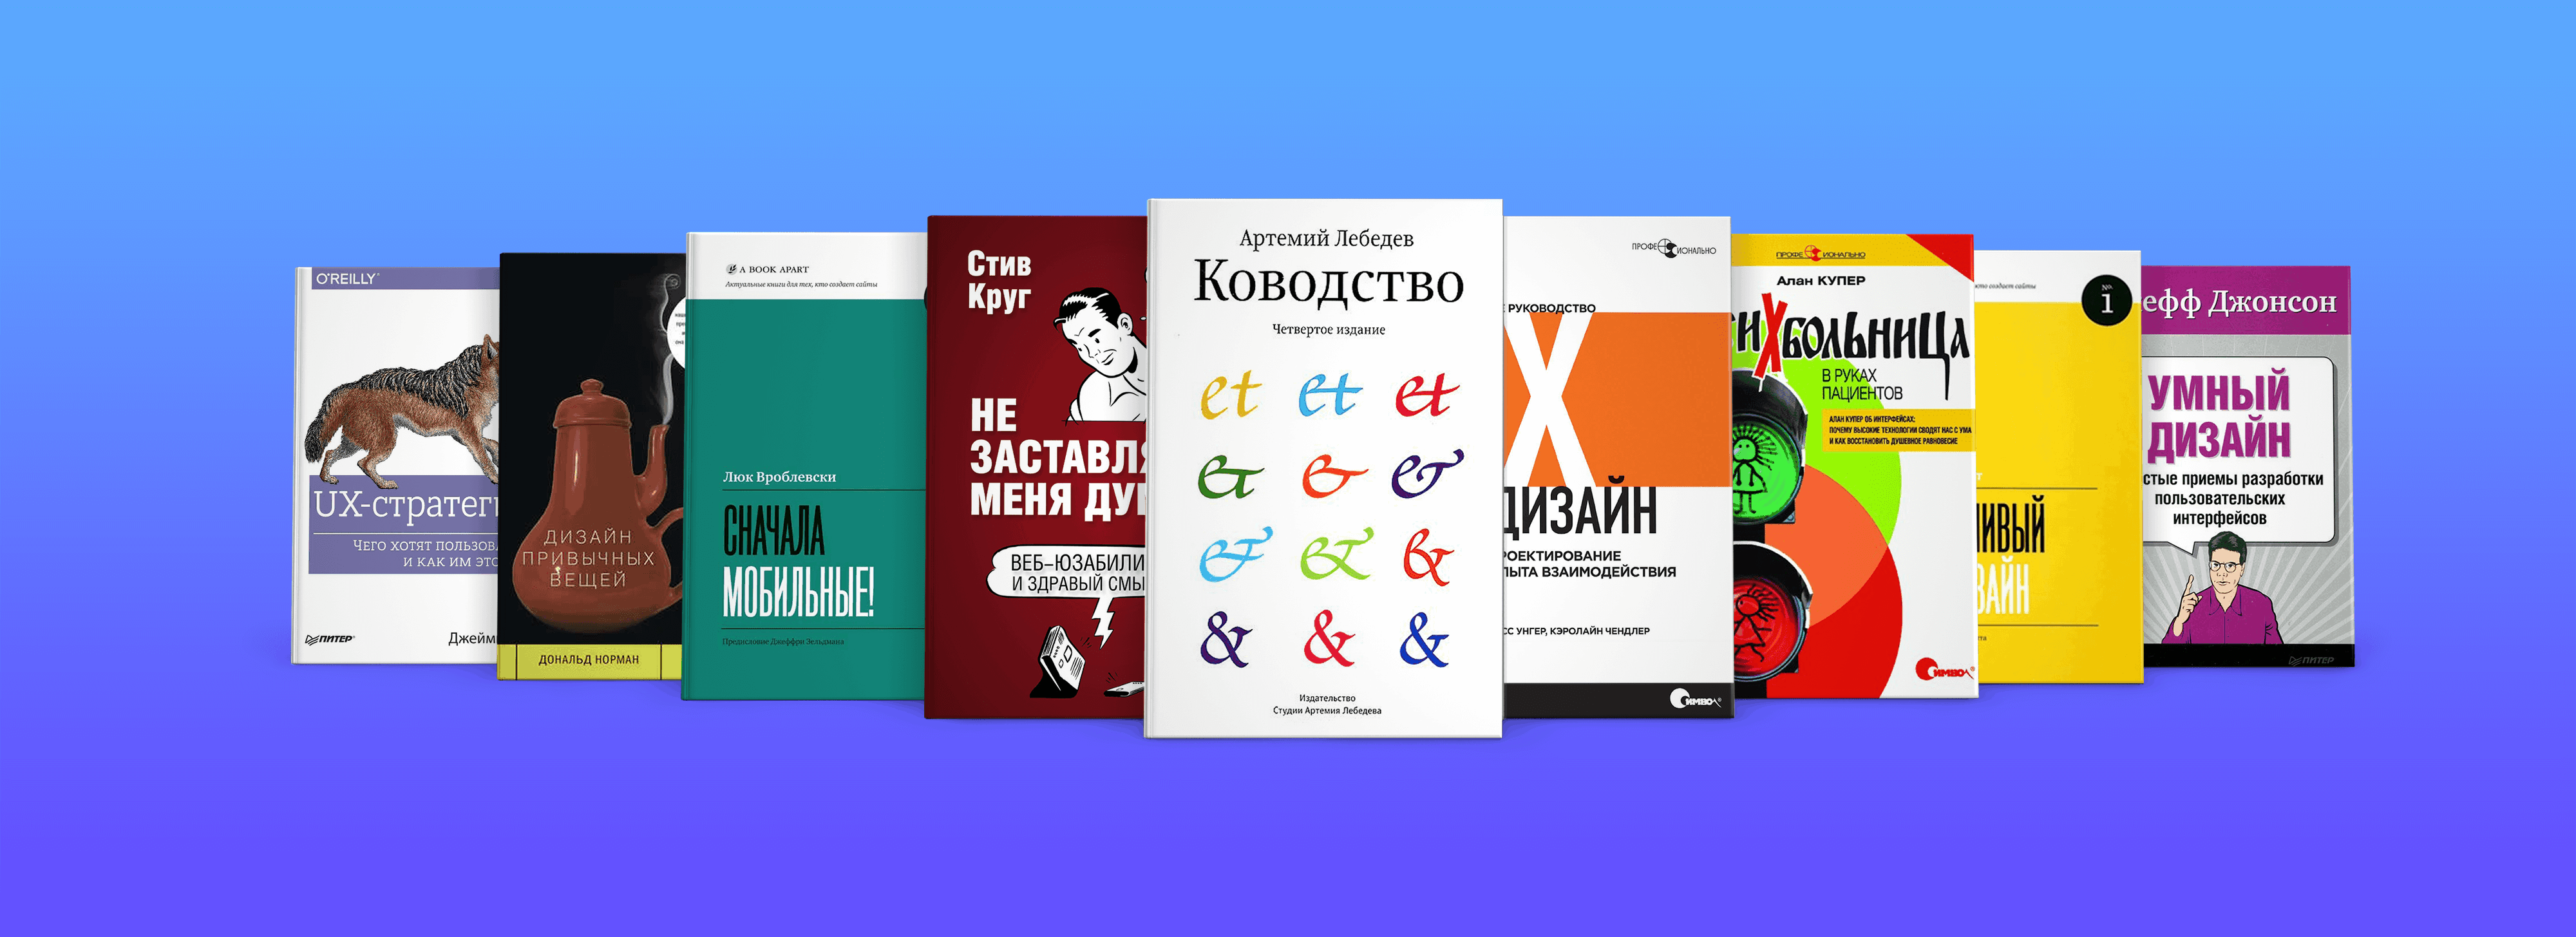 Книги по UX-дизайну на&nbsp;русском, фотография 1